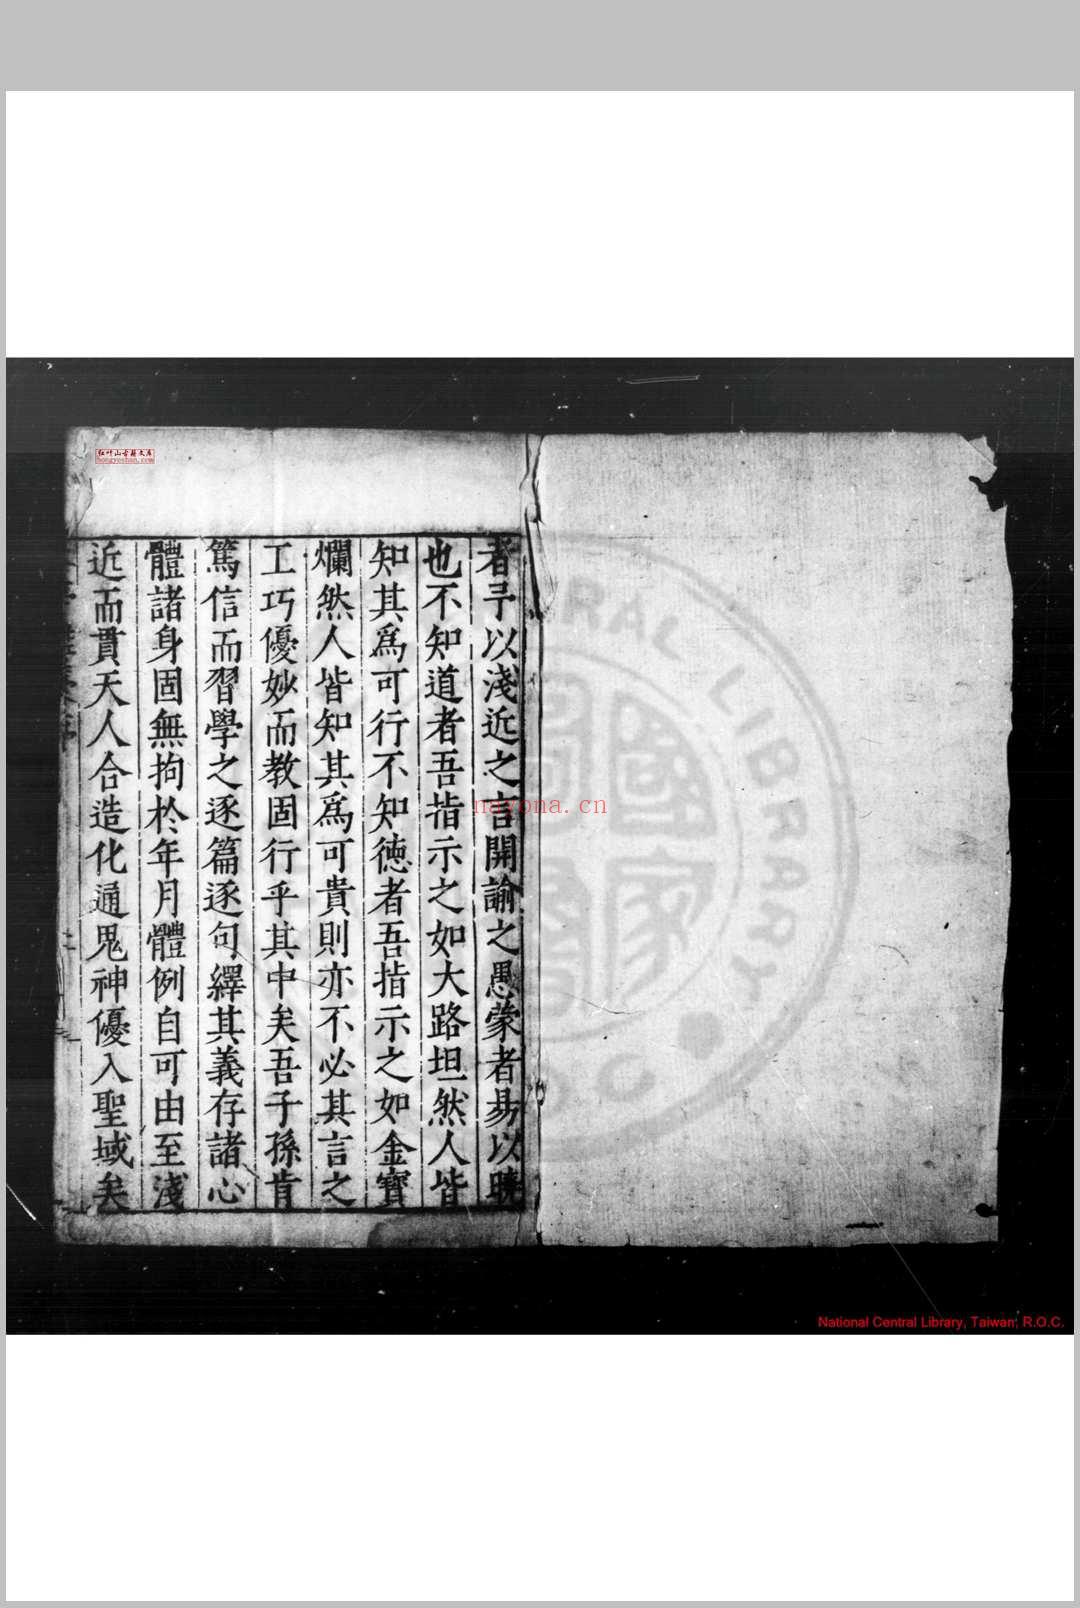 木亭杂稿 (明)乐頀撰 明嘉靖四十一年(1562)临川乐氏刊本